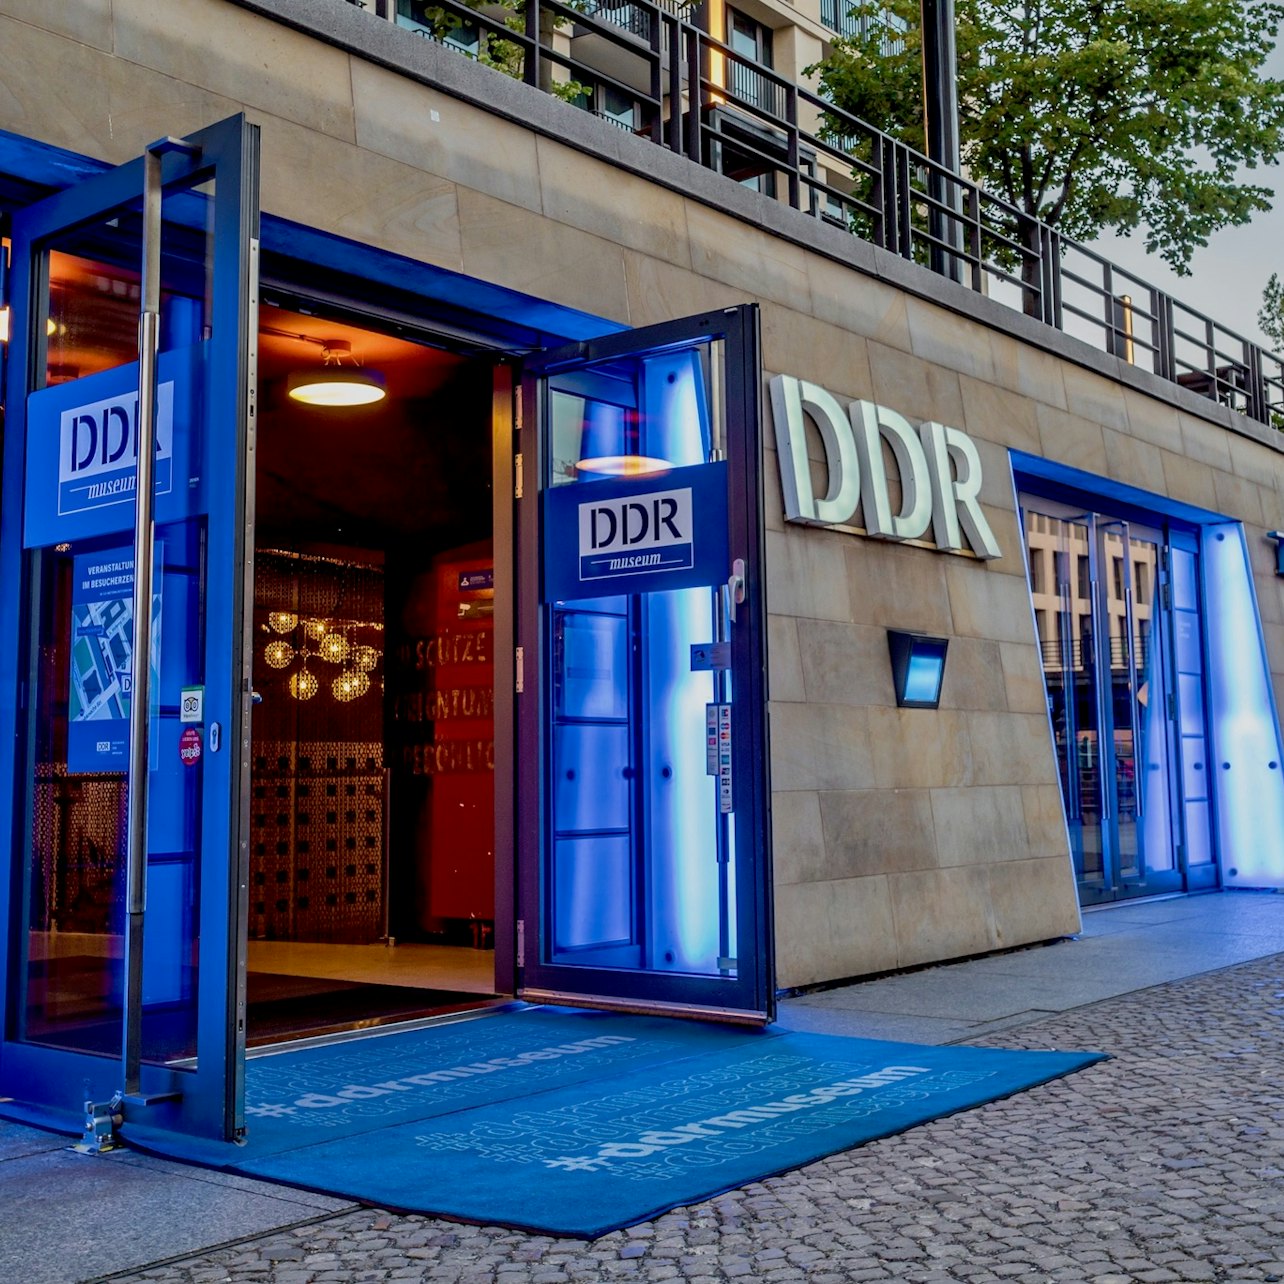 DDR Museum - Alojamientos en Berlín